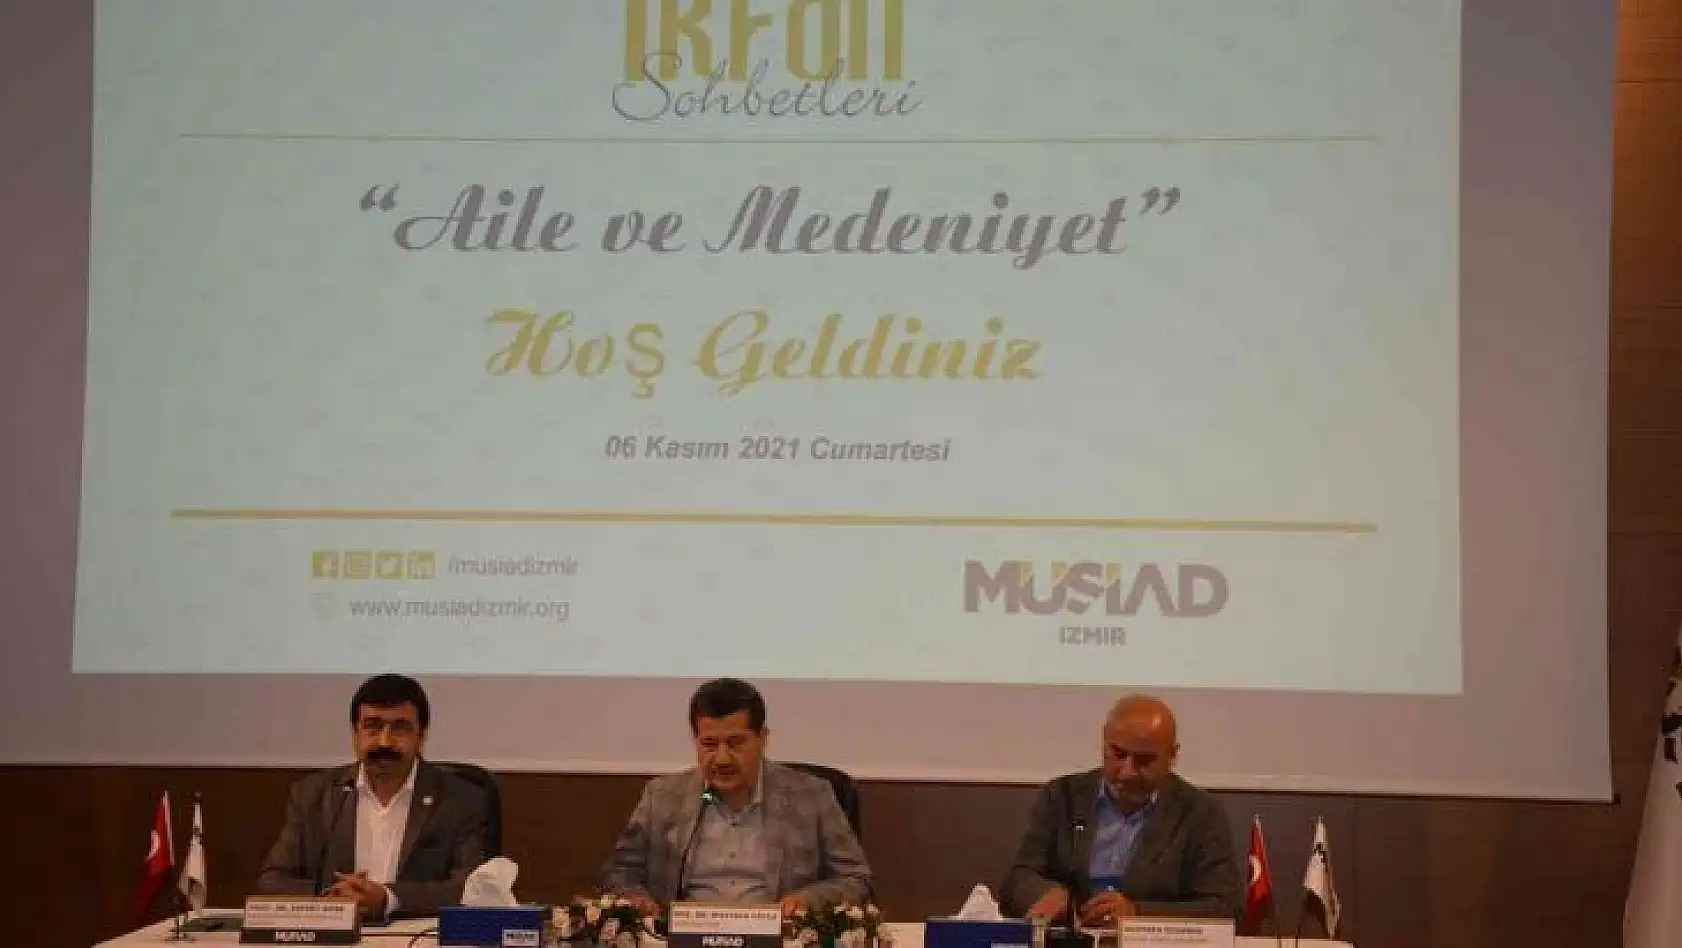 MÜSİAD İzmir'de 'Aile ve Medeniyet' konuşuldu